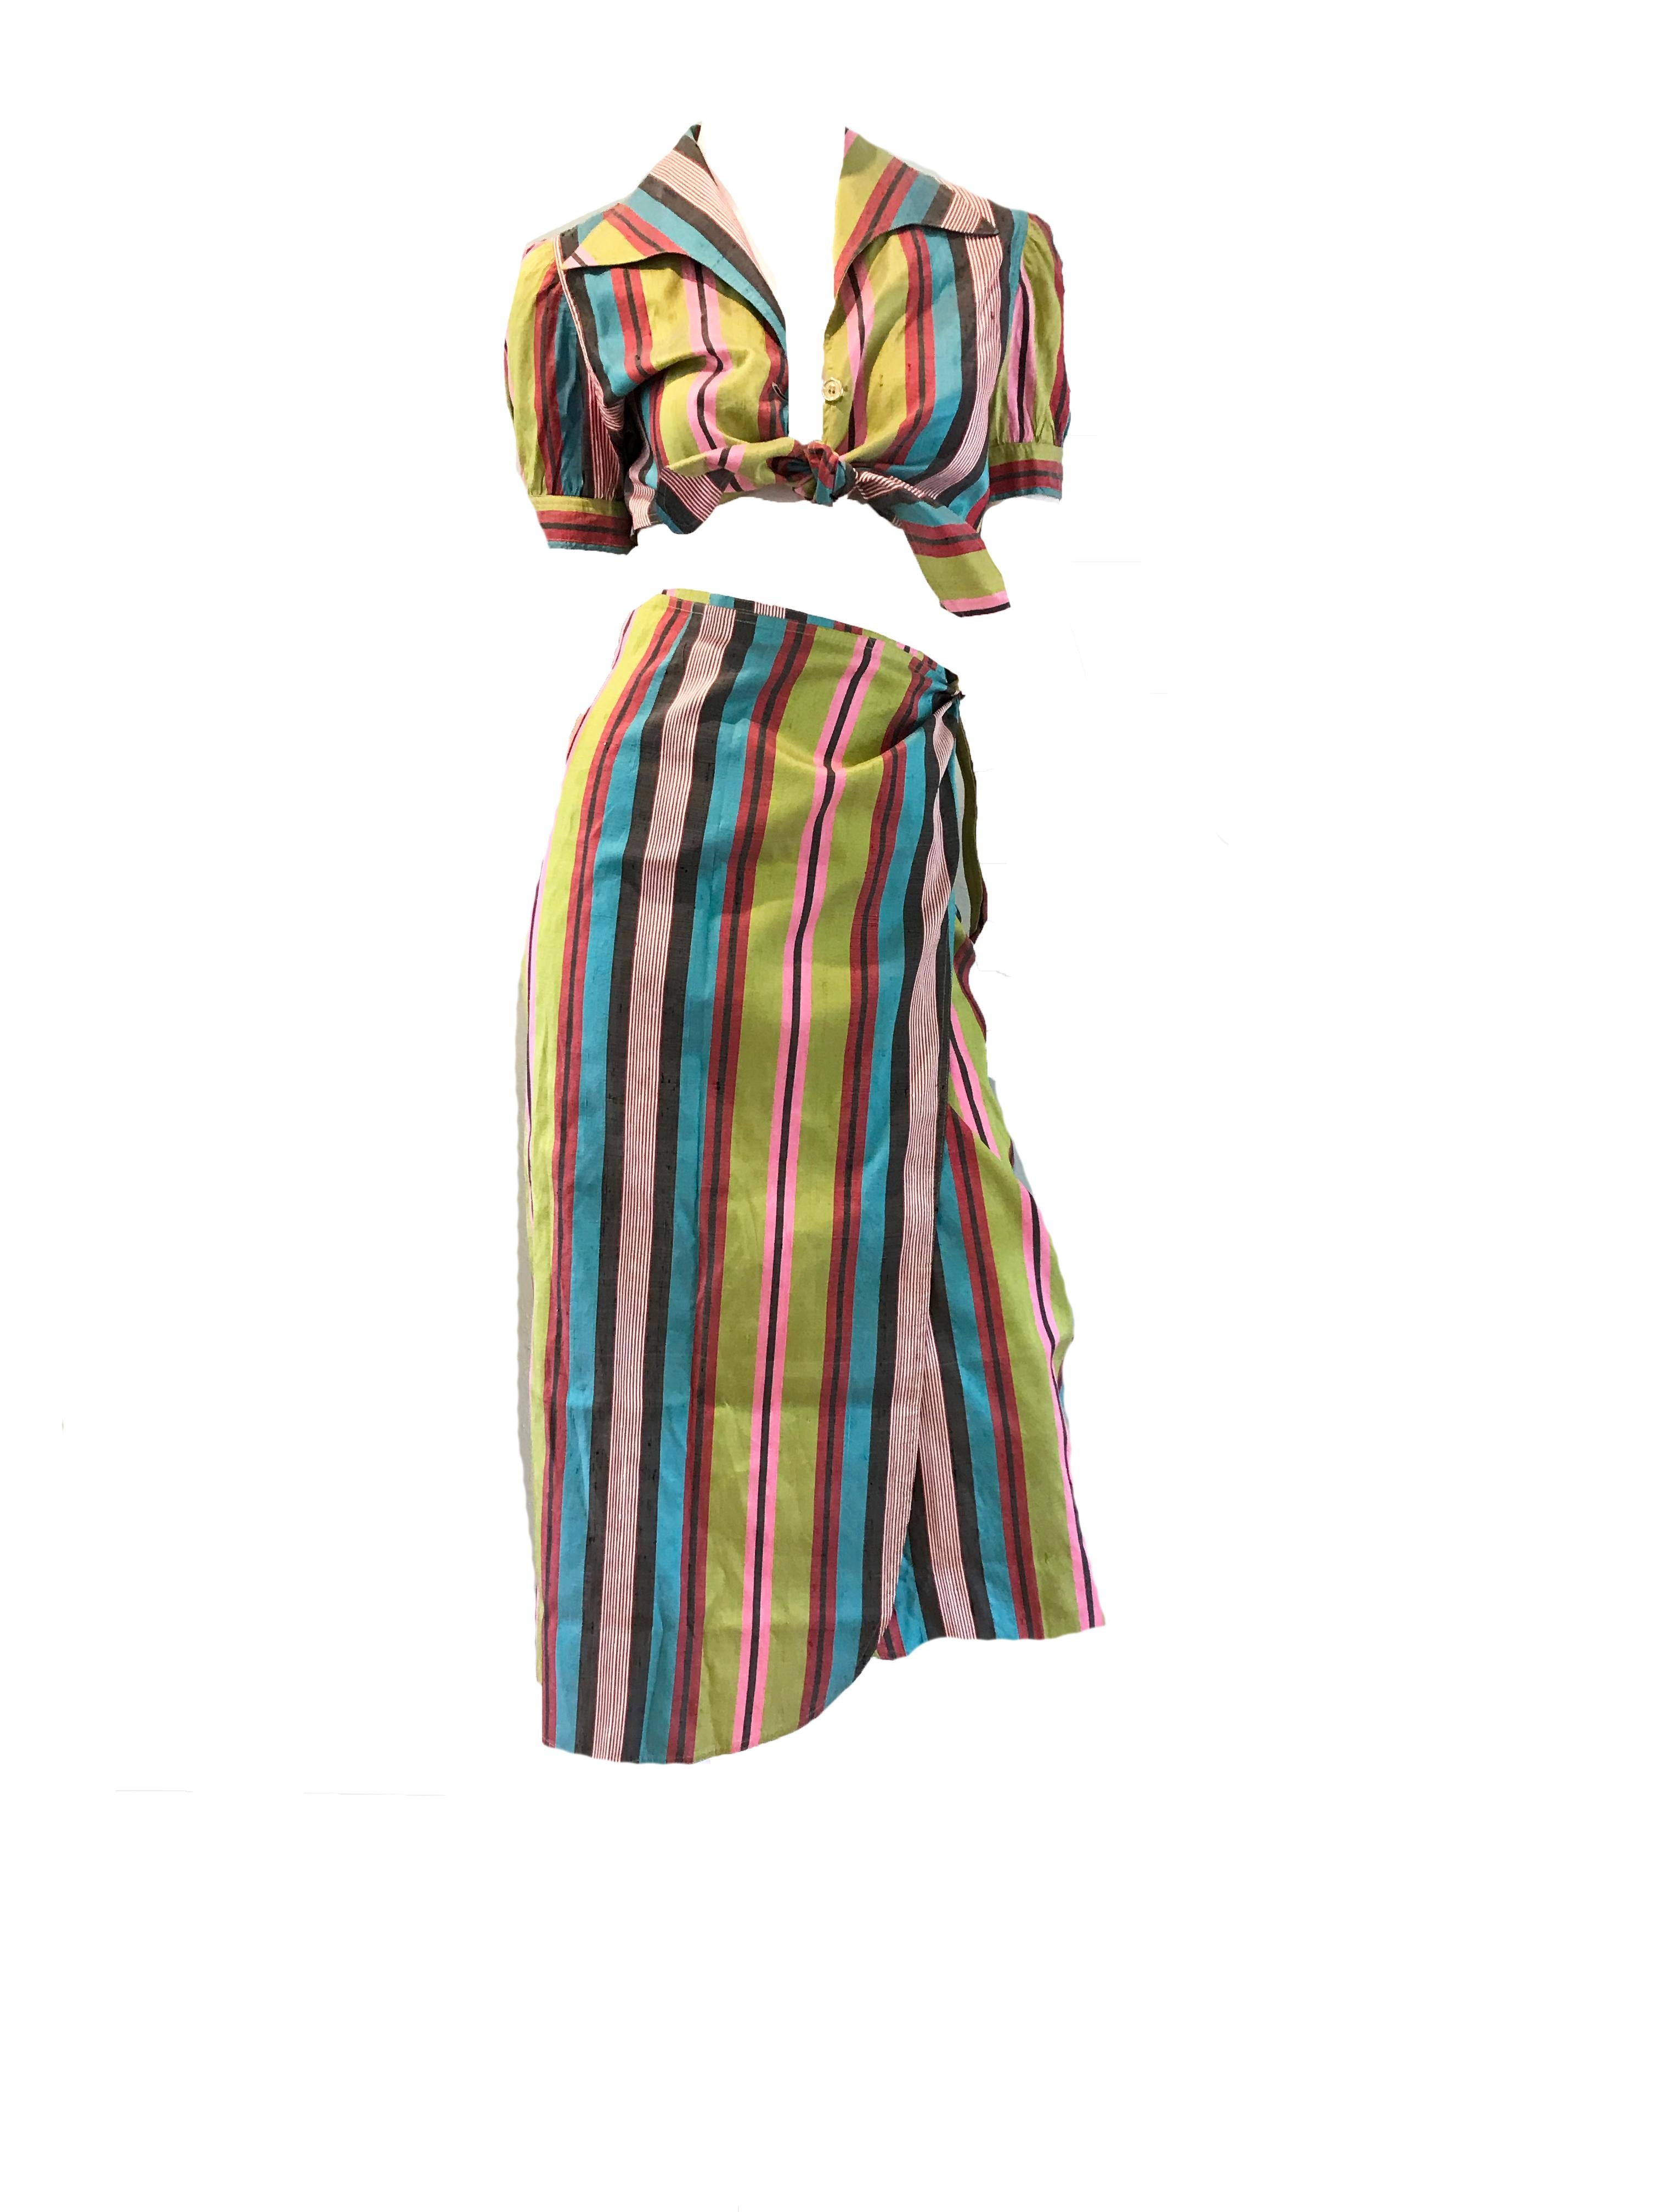 1990er Moschino gestreiftes Seidenoberteil mit Krawatte und Wickelrock. Zustand: Ausgezeichnet
Größe 42/ US 8 / M
30